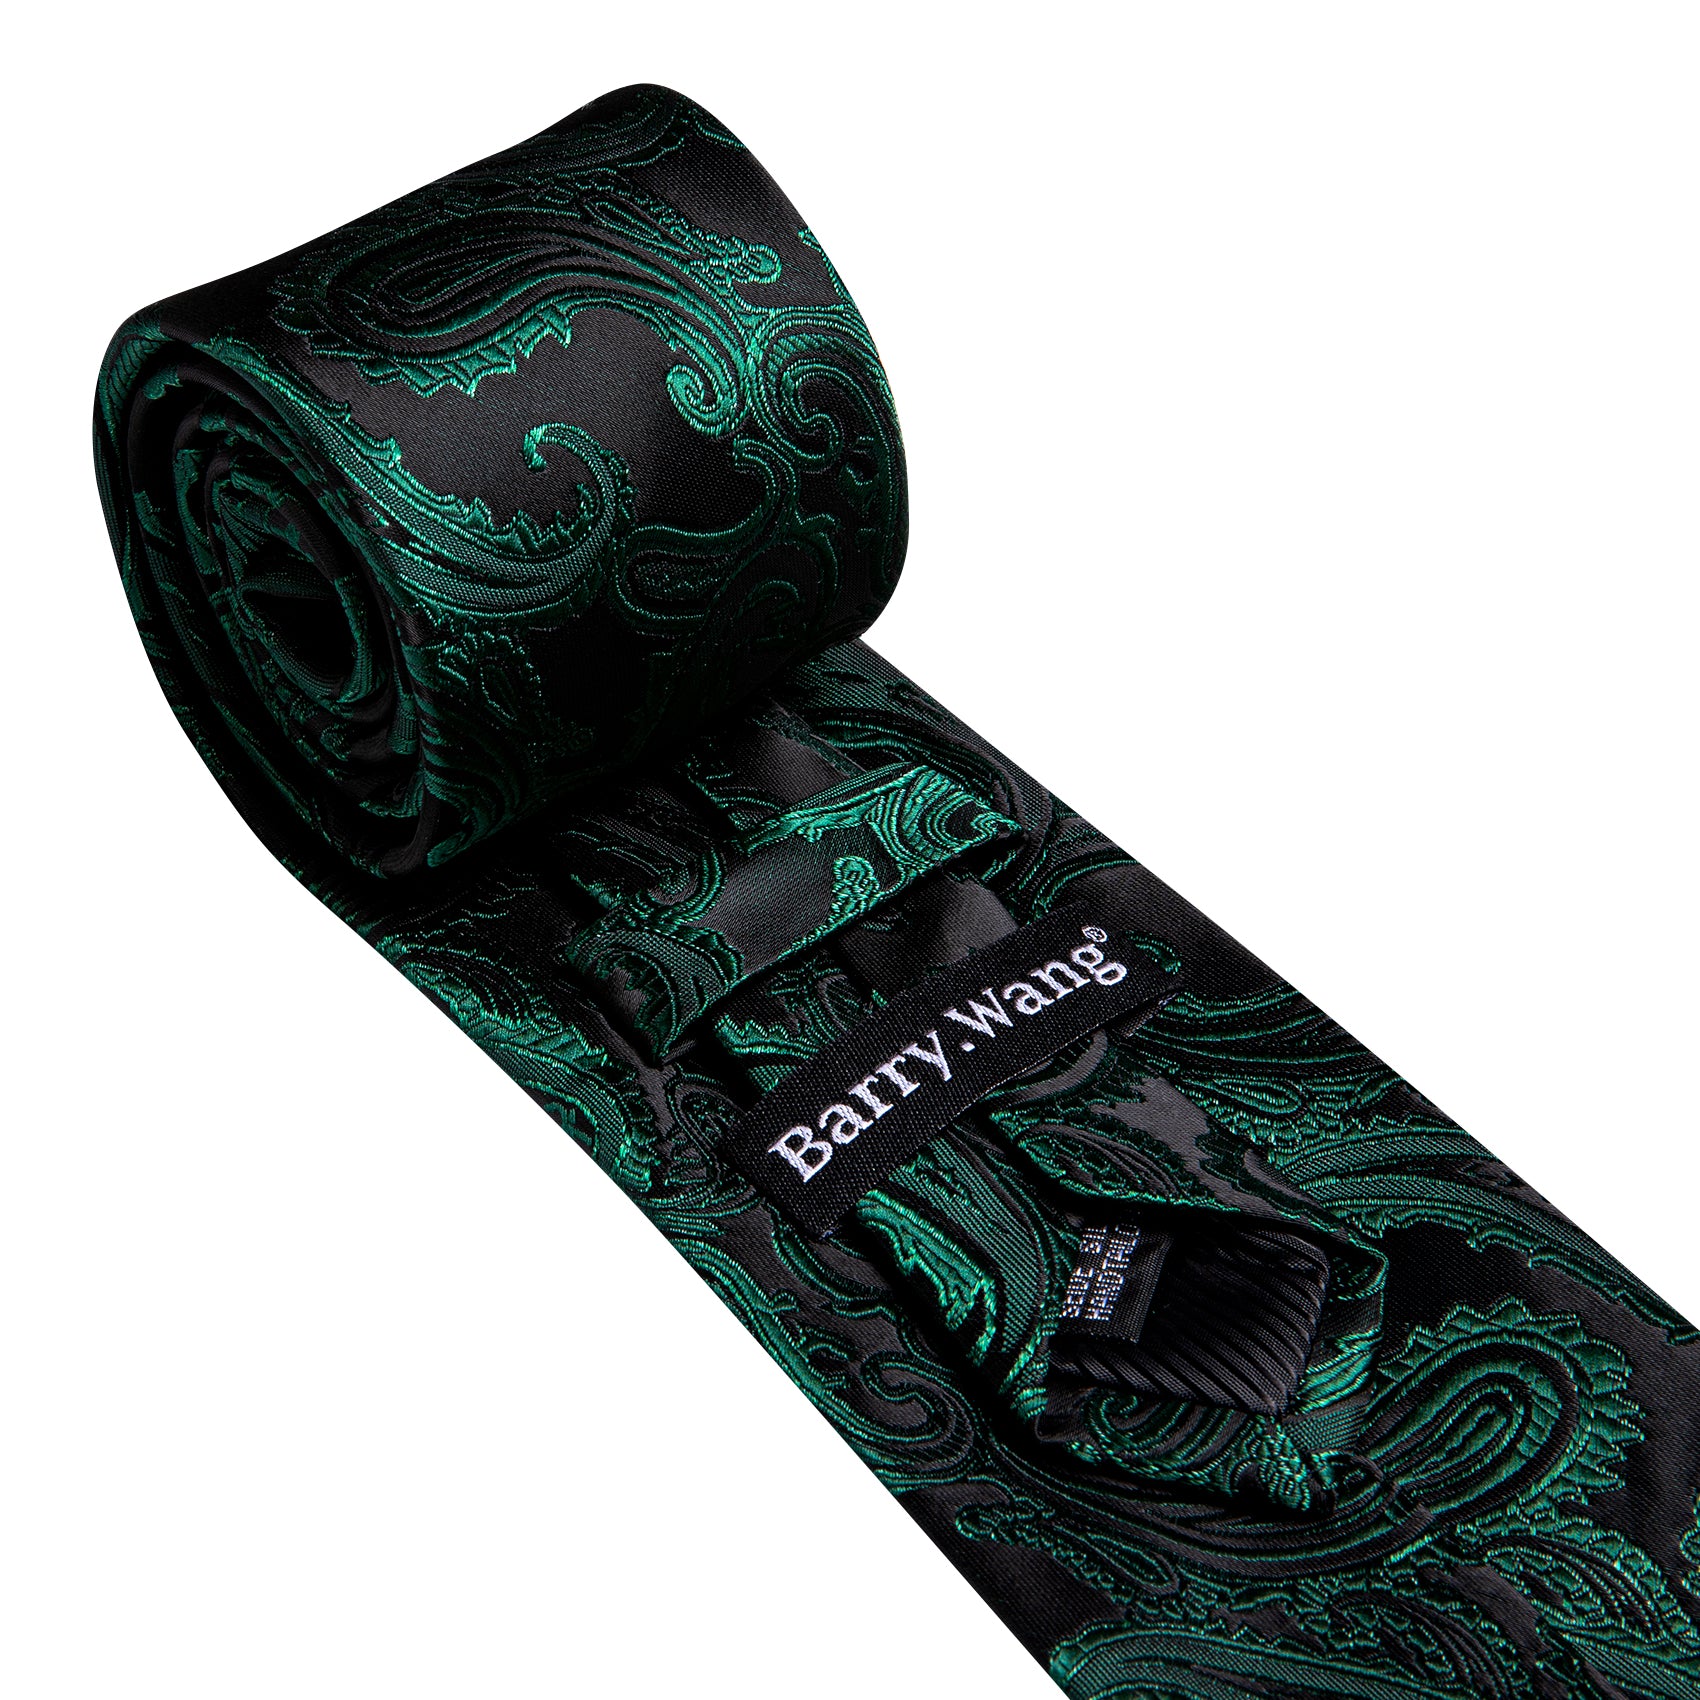 Barry Wang Dark Green Paisley Silk Tie Handkerchief Cufflinks Set